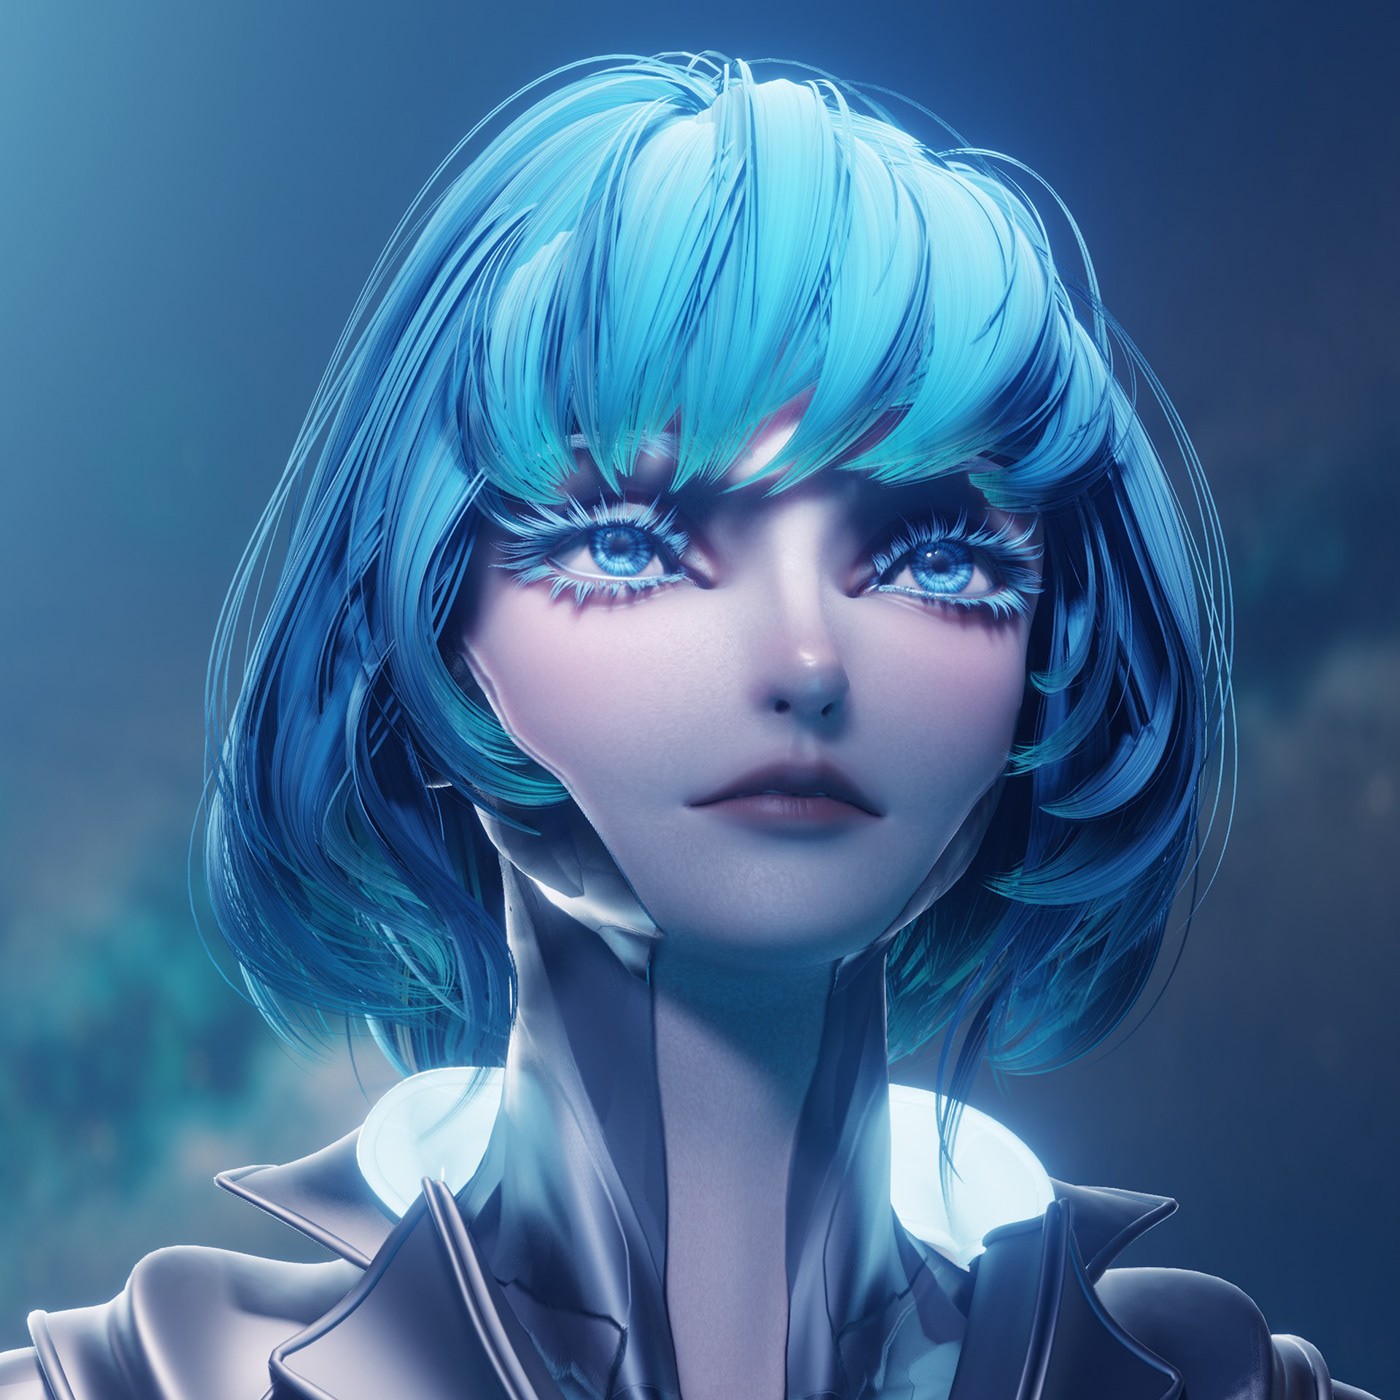 3D Character Character character animation Character design  Cyberpunk hair human face portrait Sculpt